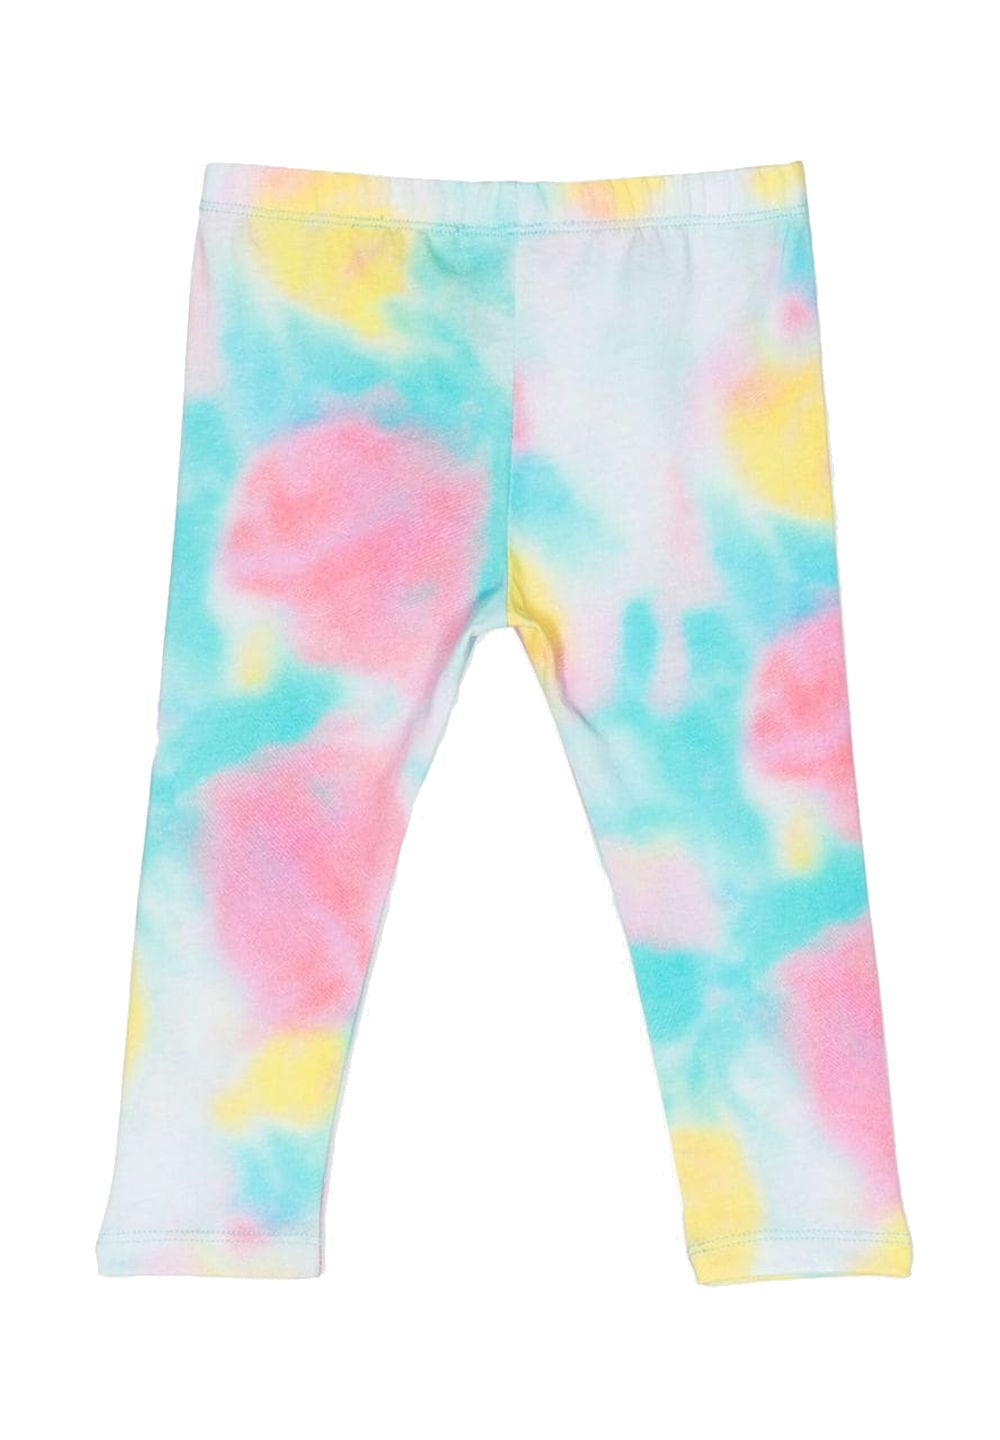 Pantalone multicolor per neonata - Primamoda kids